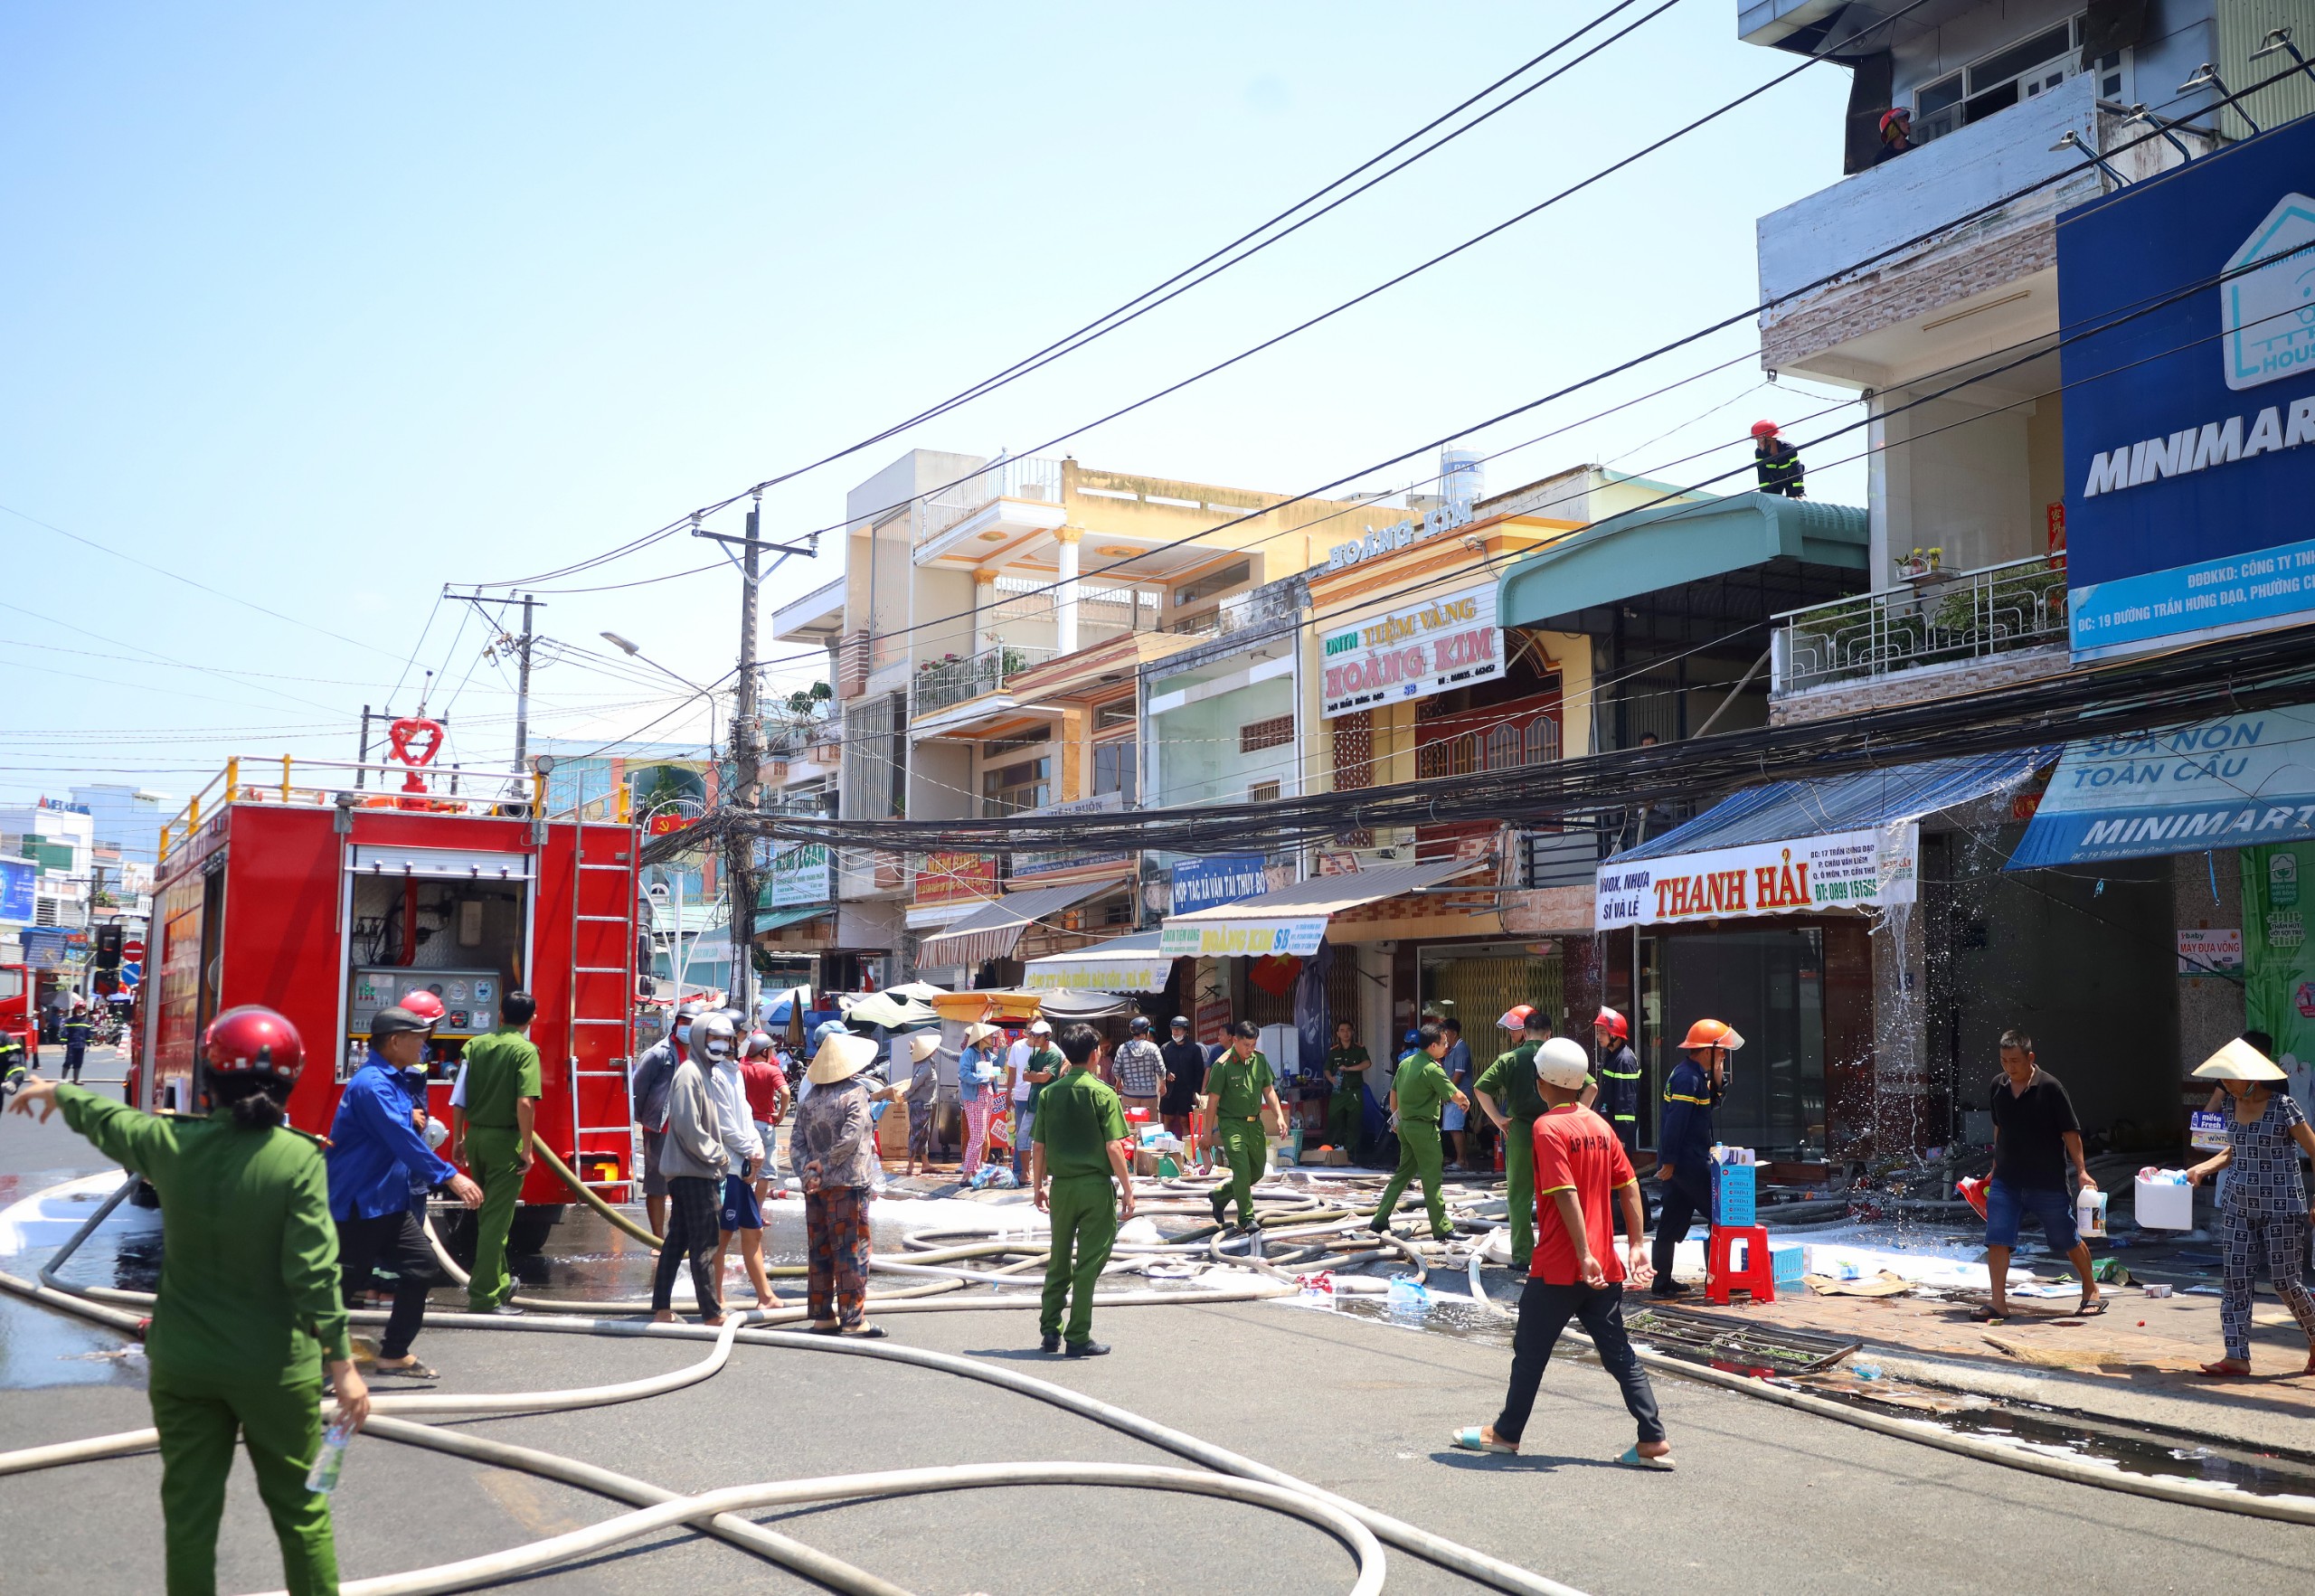 Hiện trường vụ cháy cửa hàng bán đồ nhựa, inox Thanh Hải, đường Trần Hưng Đạo, phường Châu Văn Liêm, quận Ô Môn.